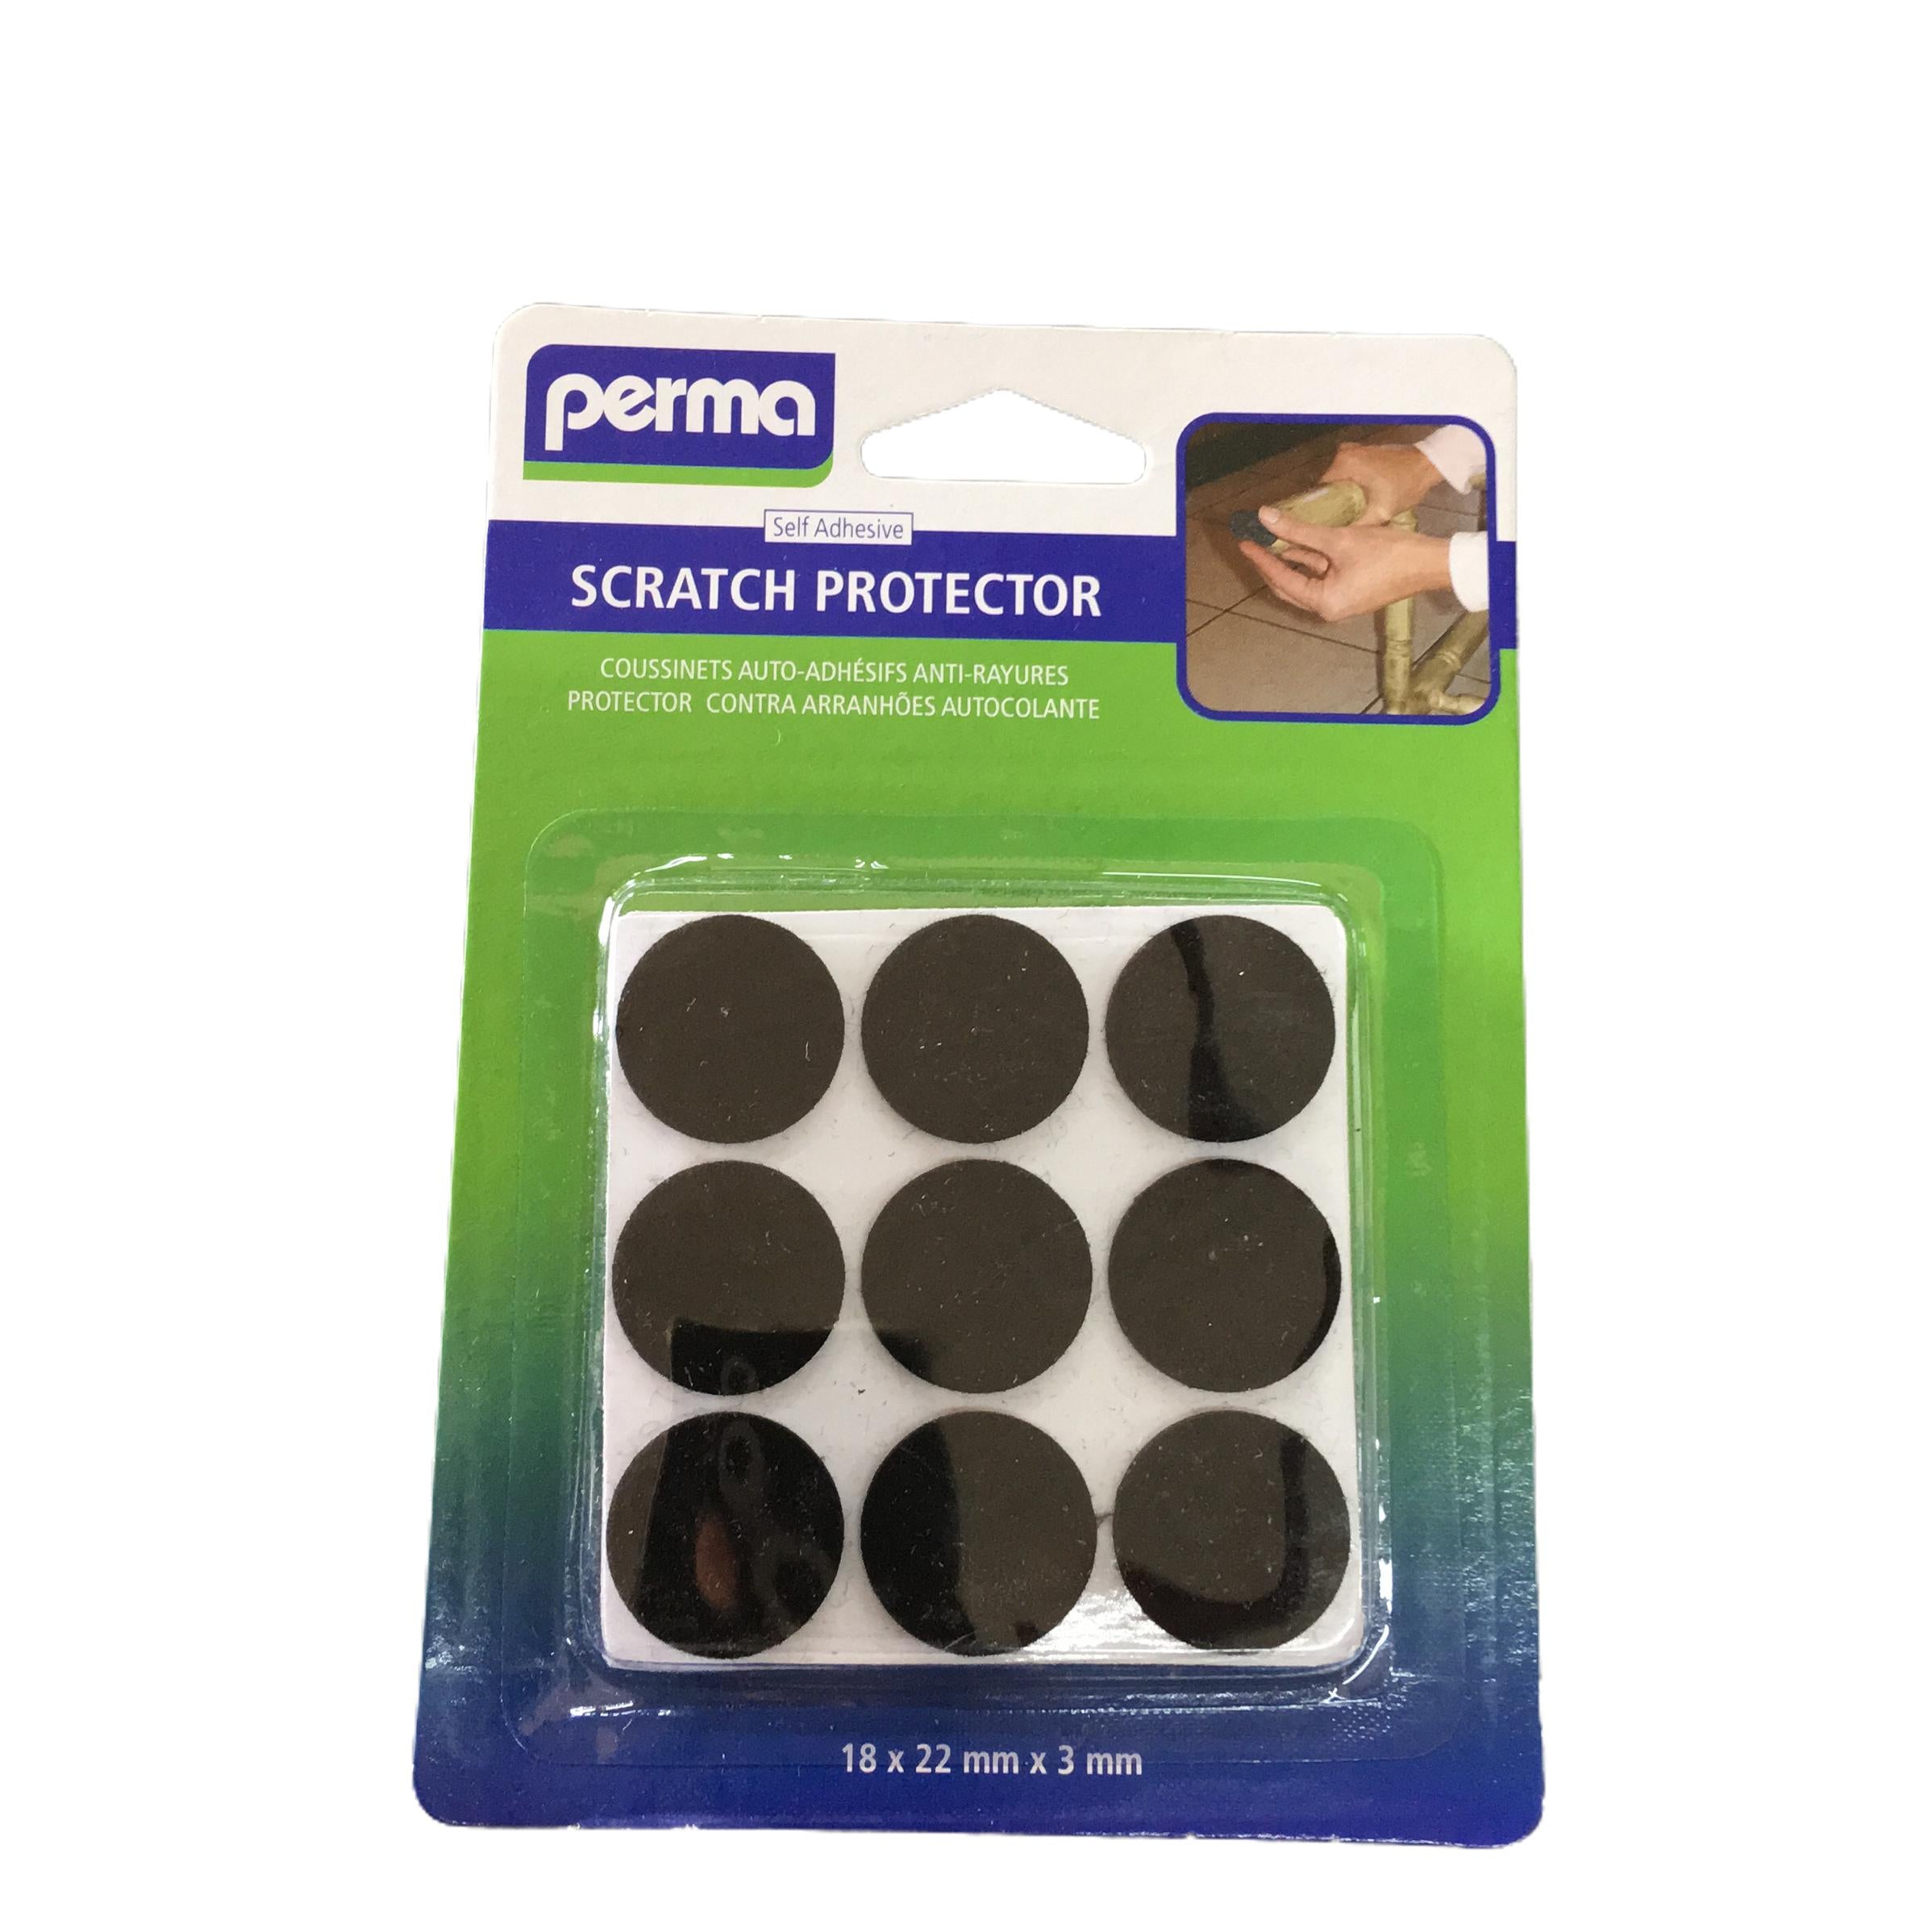 Scratch Protector Felt Perma-Cabinet Accessories-Perma-22mm x 3mm – 18 pads per pack-diyshop.co.za